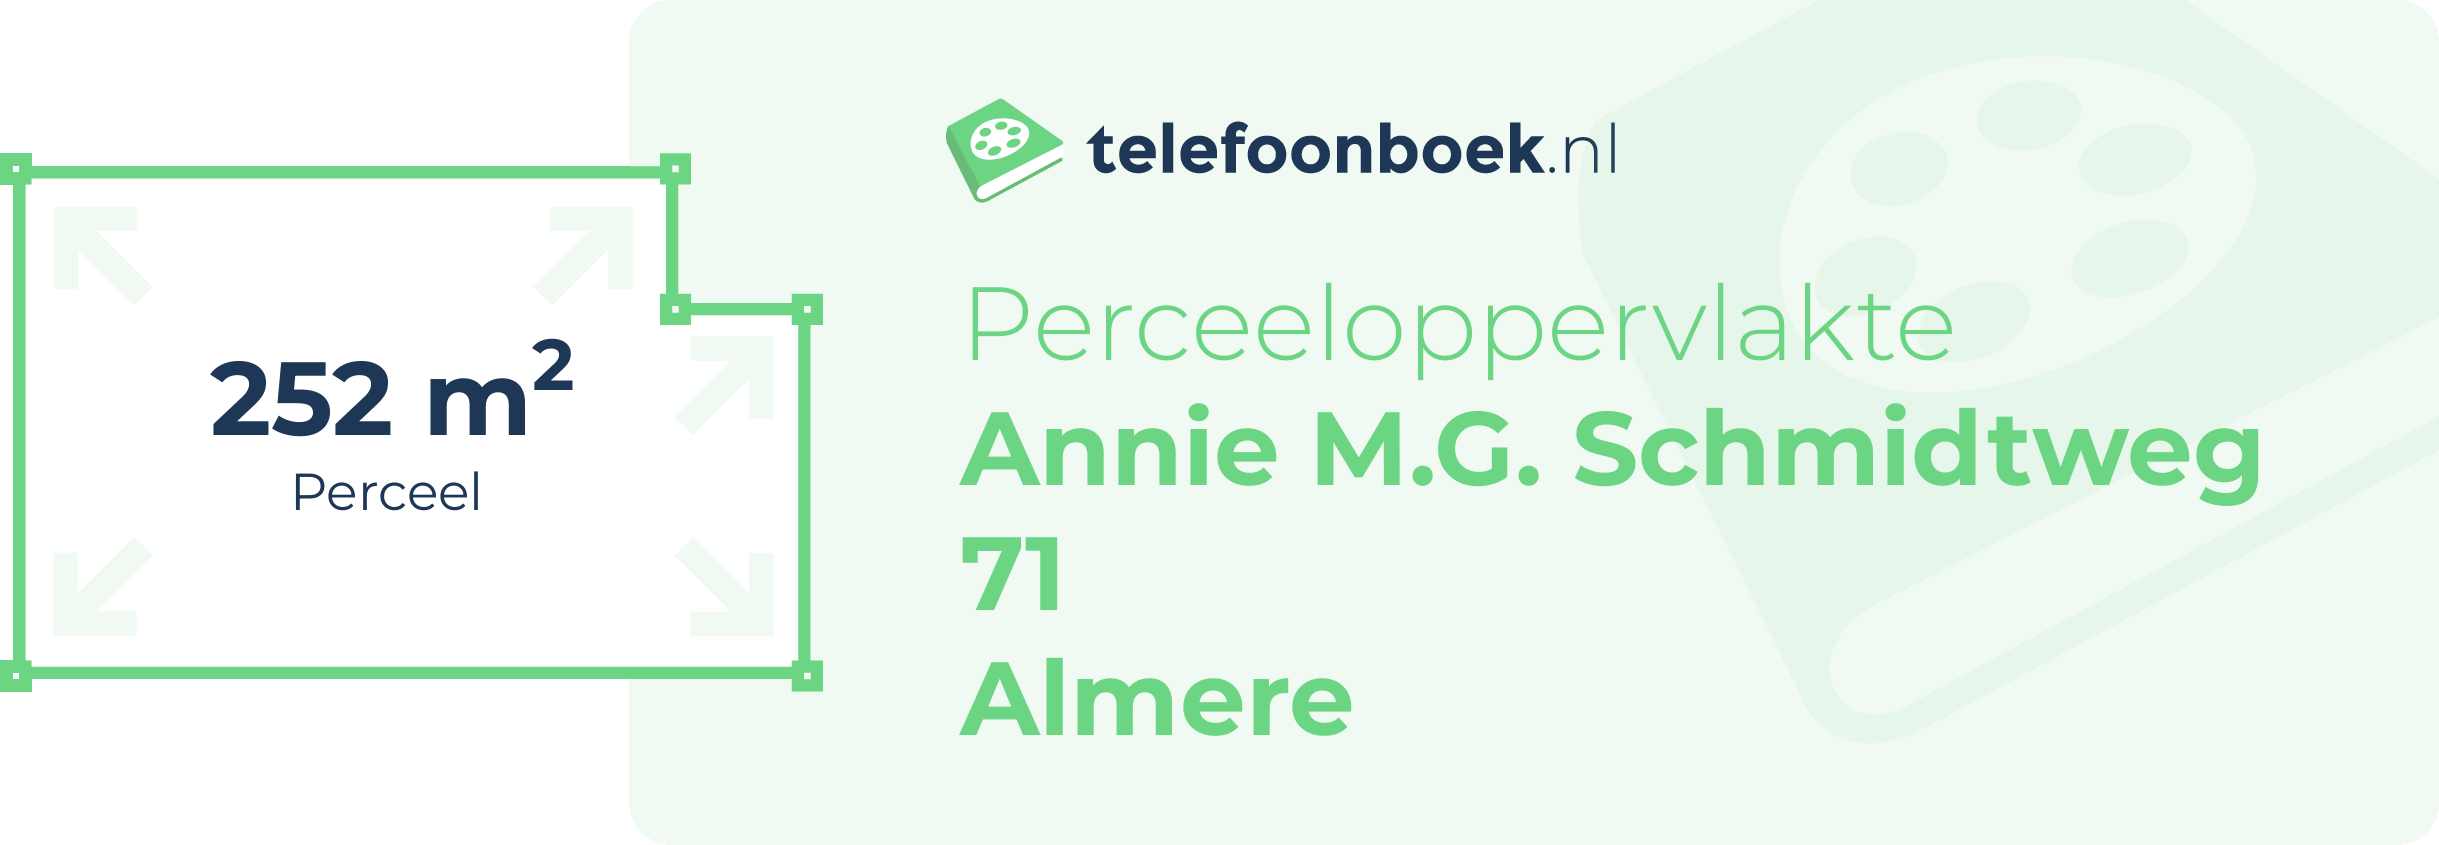 Perceeloppervlakte Annie M.G. Schmidtweg 71 Almere